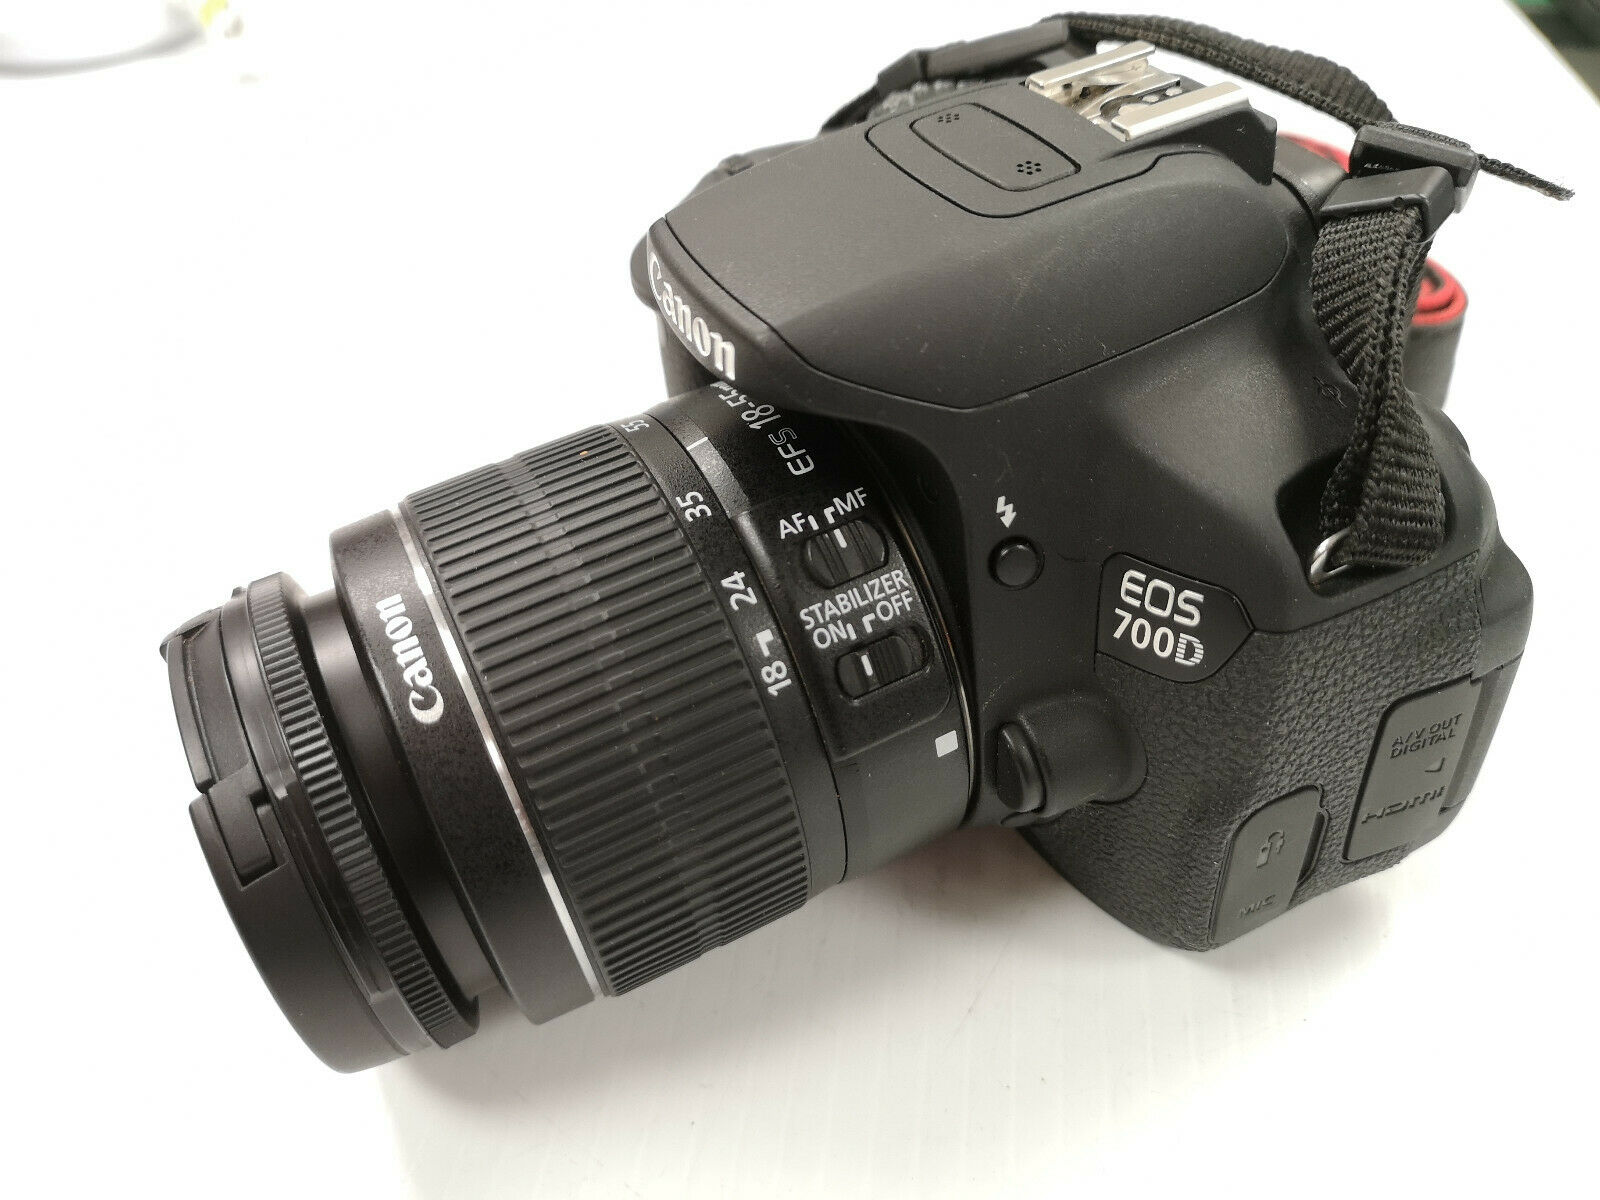 Máy ảnh Canon 700D + lens 18-55mm IS – hàng chính hãng – Tặng thẻ nhớ 16gb – Tặng túi xách Canon – Mới 95%